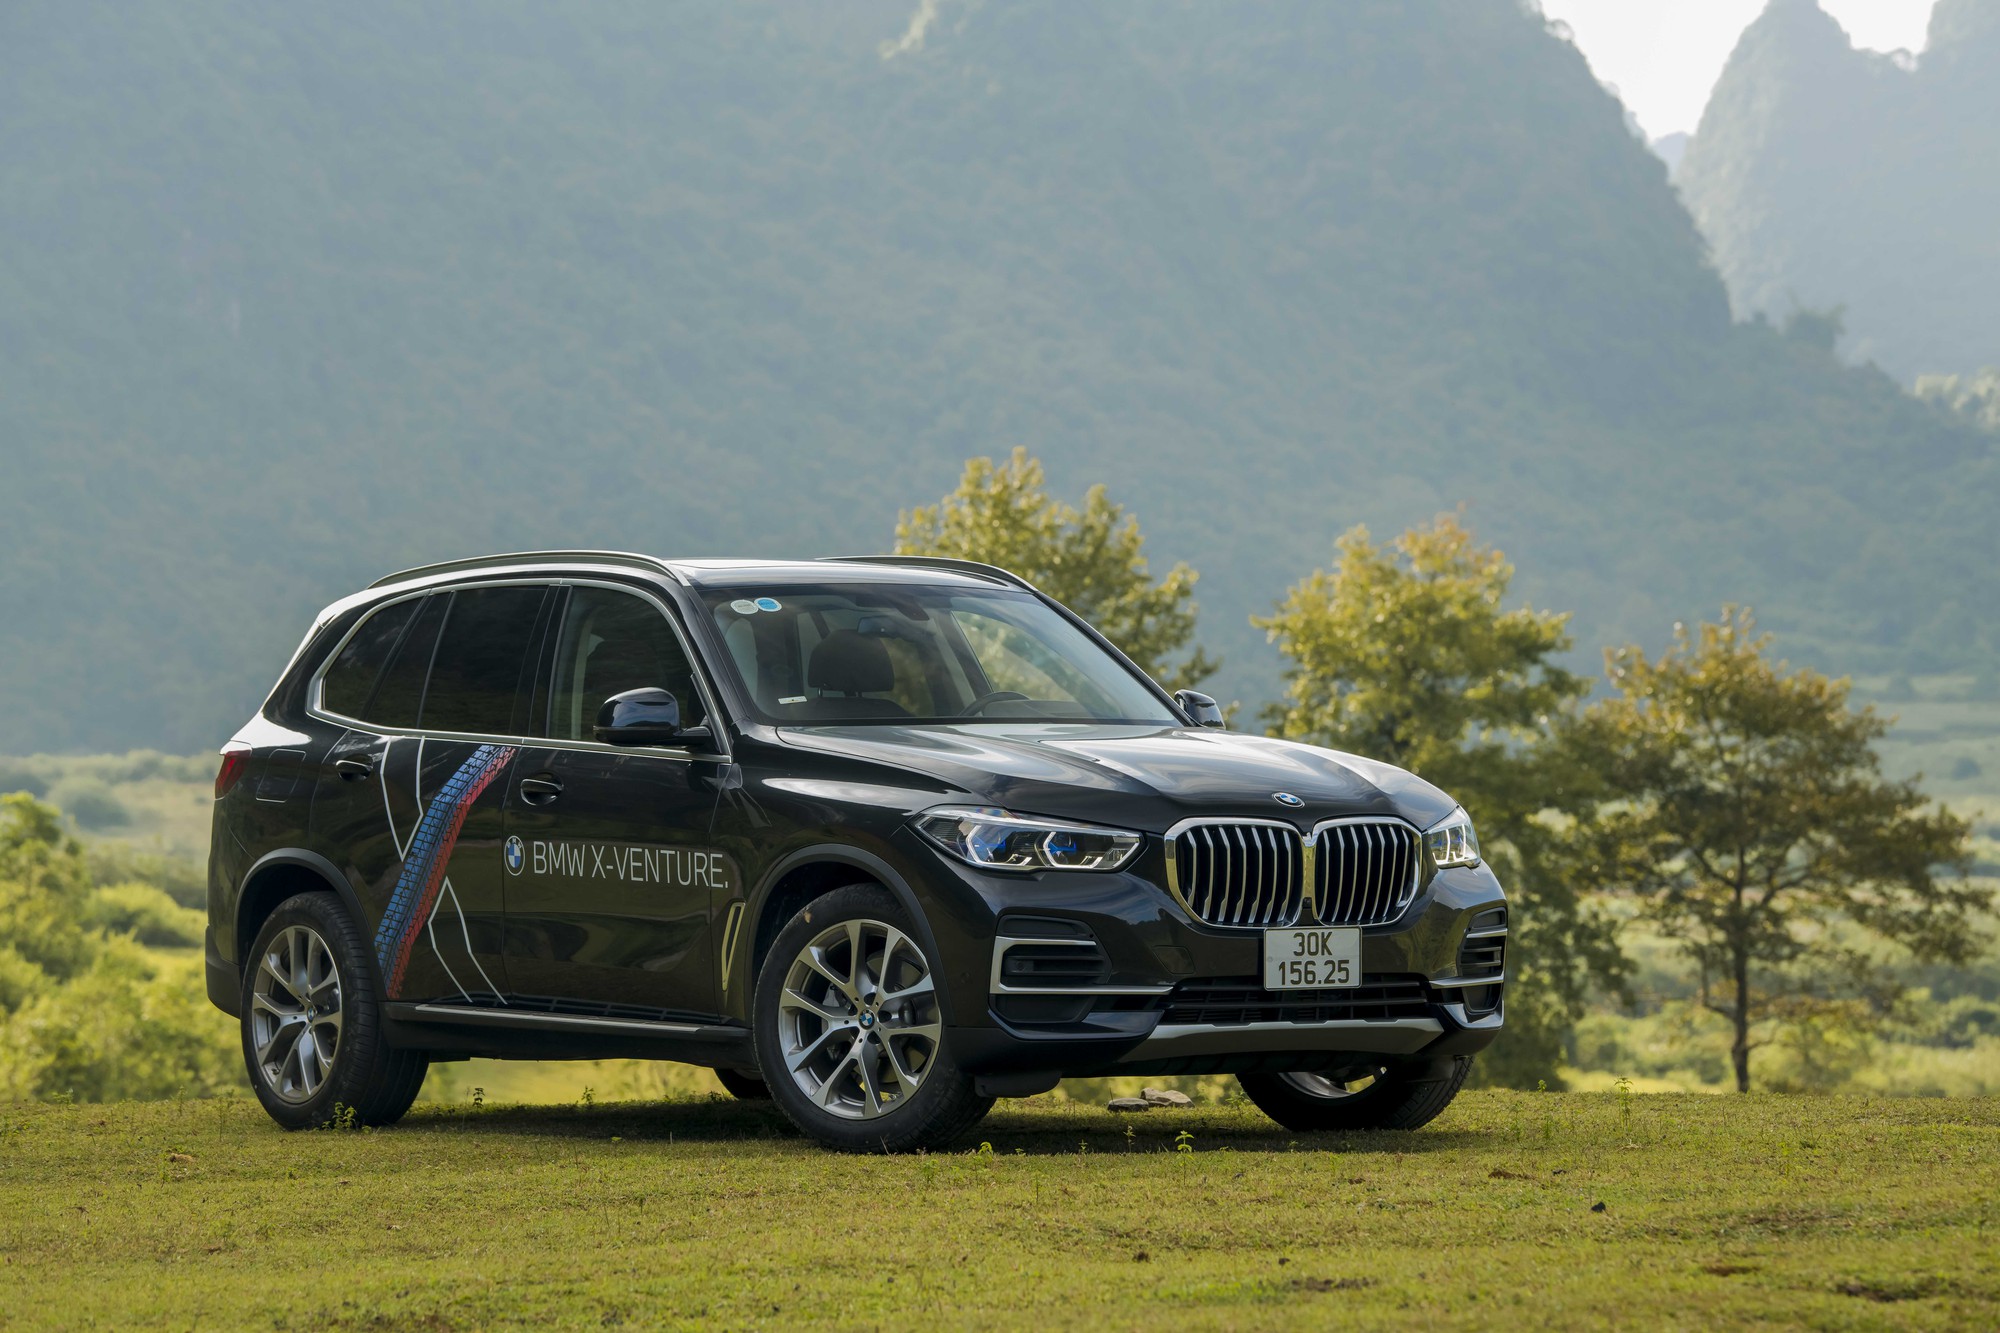 Hành trình BMW X-Venture qua cảm nhận của người cầm lái: Lái mượt, đầm và an toàn - Ảnh 3.